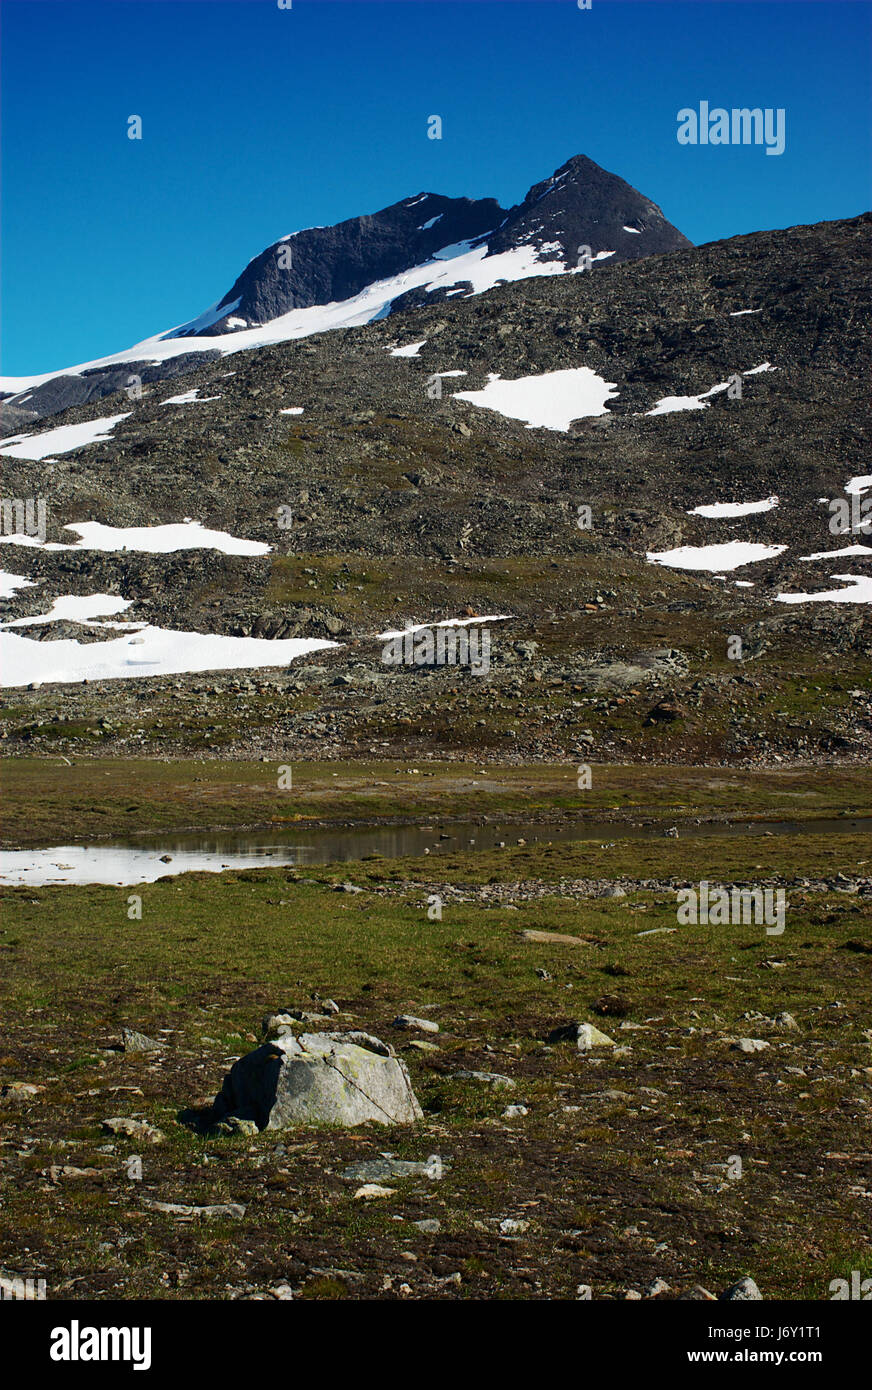 In Norvegia la neve l'acqua salata del mare acqua oceano paesaggio di montagna campagna natura segno Foto Stock